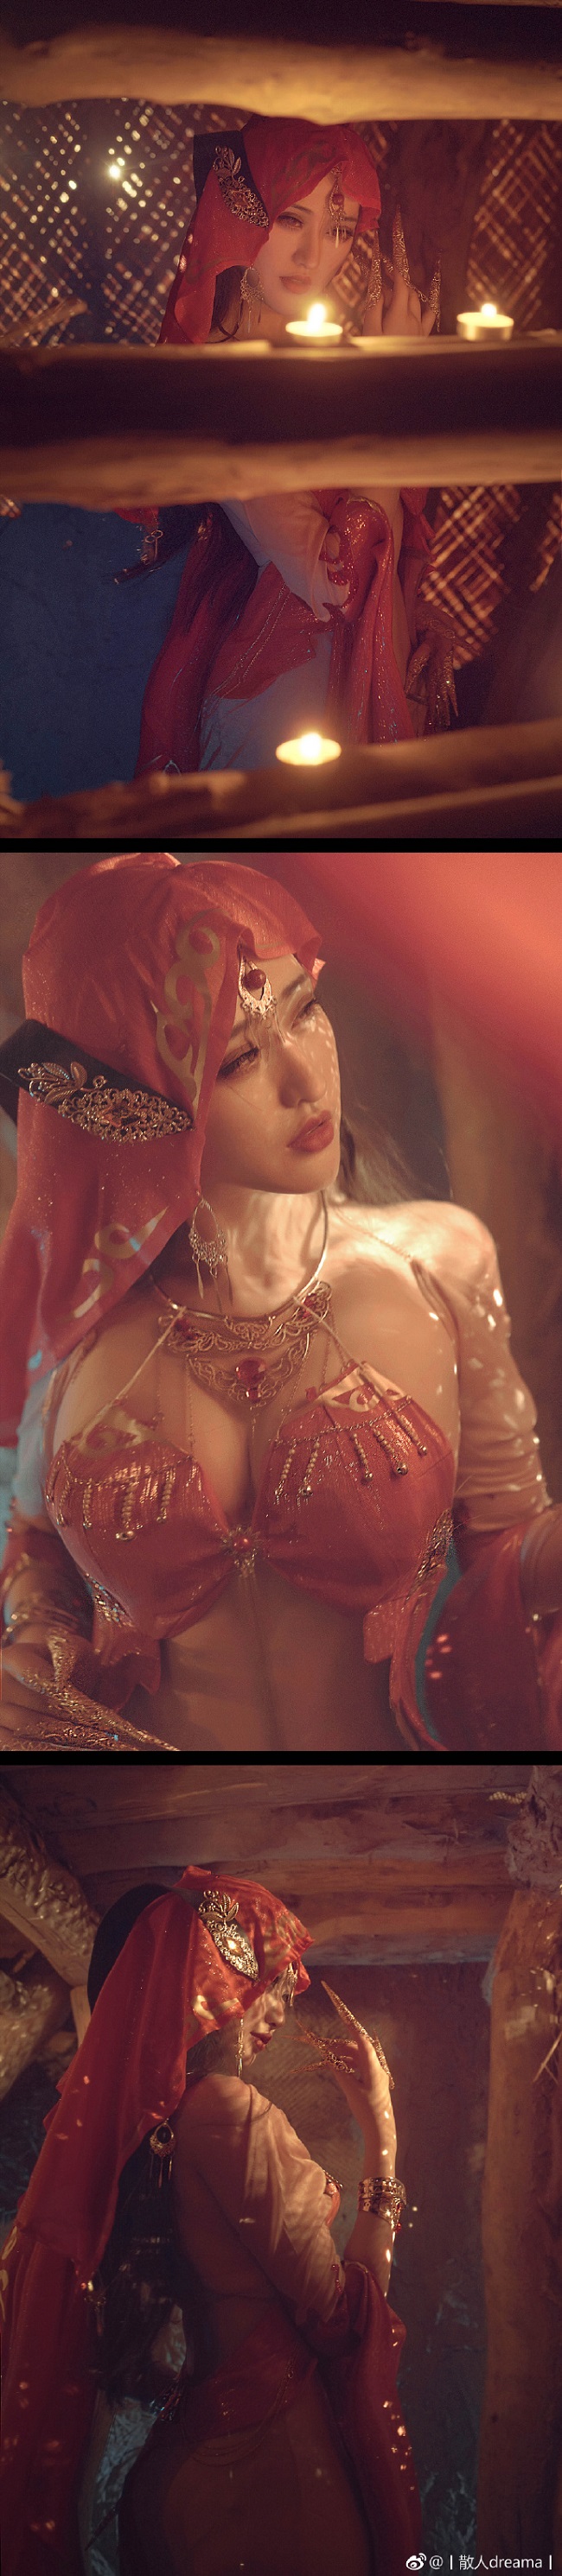 Chiêm ngưỡng “đường cong” cực nóng bỏng với cosplay thánh nữ Minh Giáo